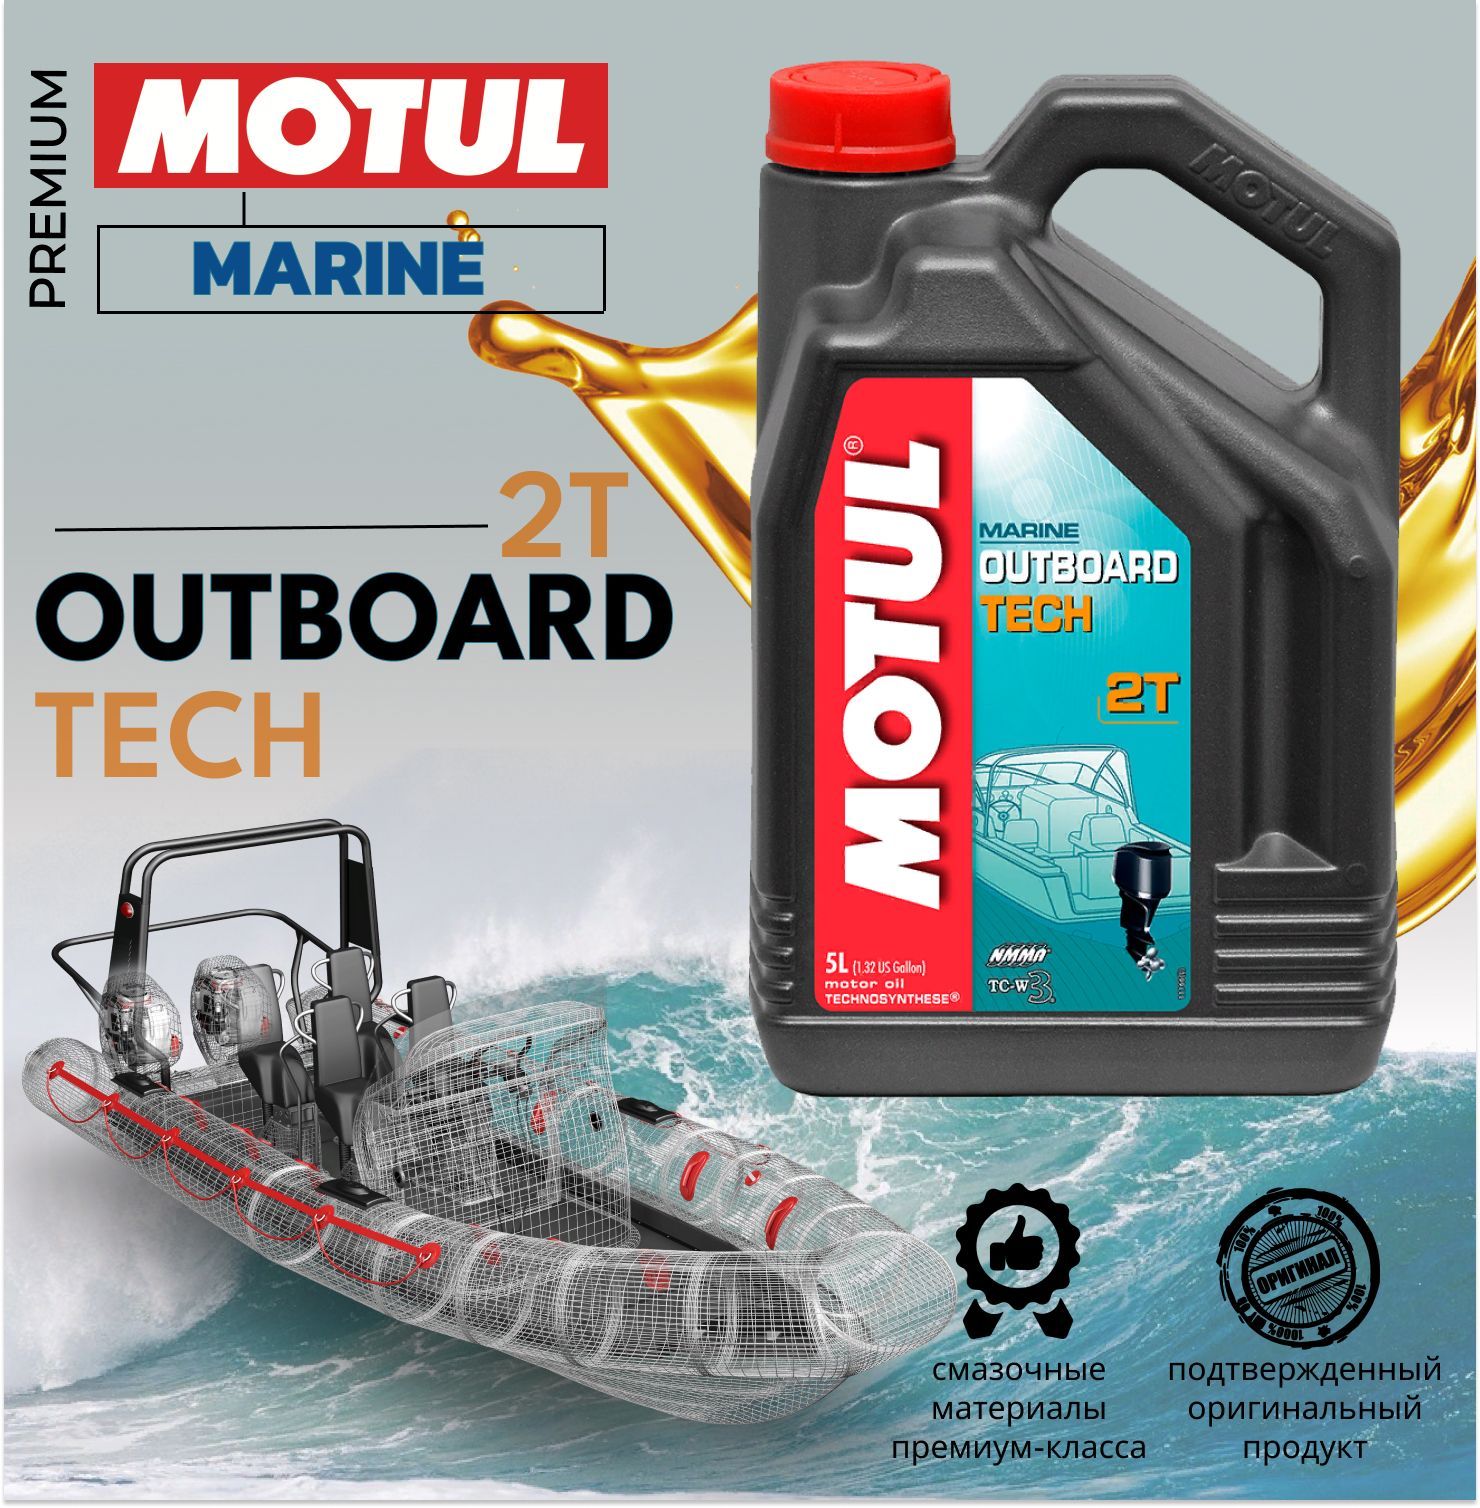 Motul outboard Tech 2t 5л. Motul outboard tech 2t